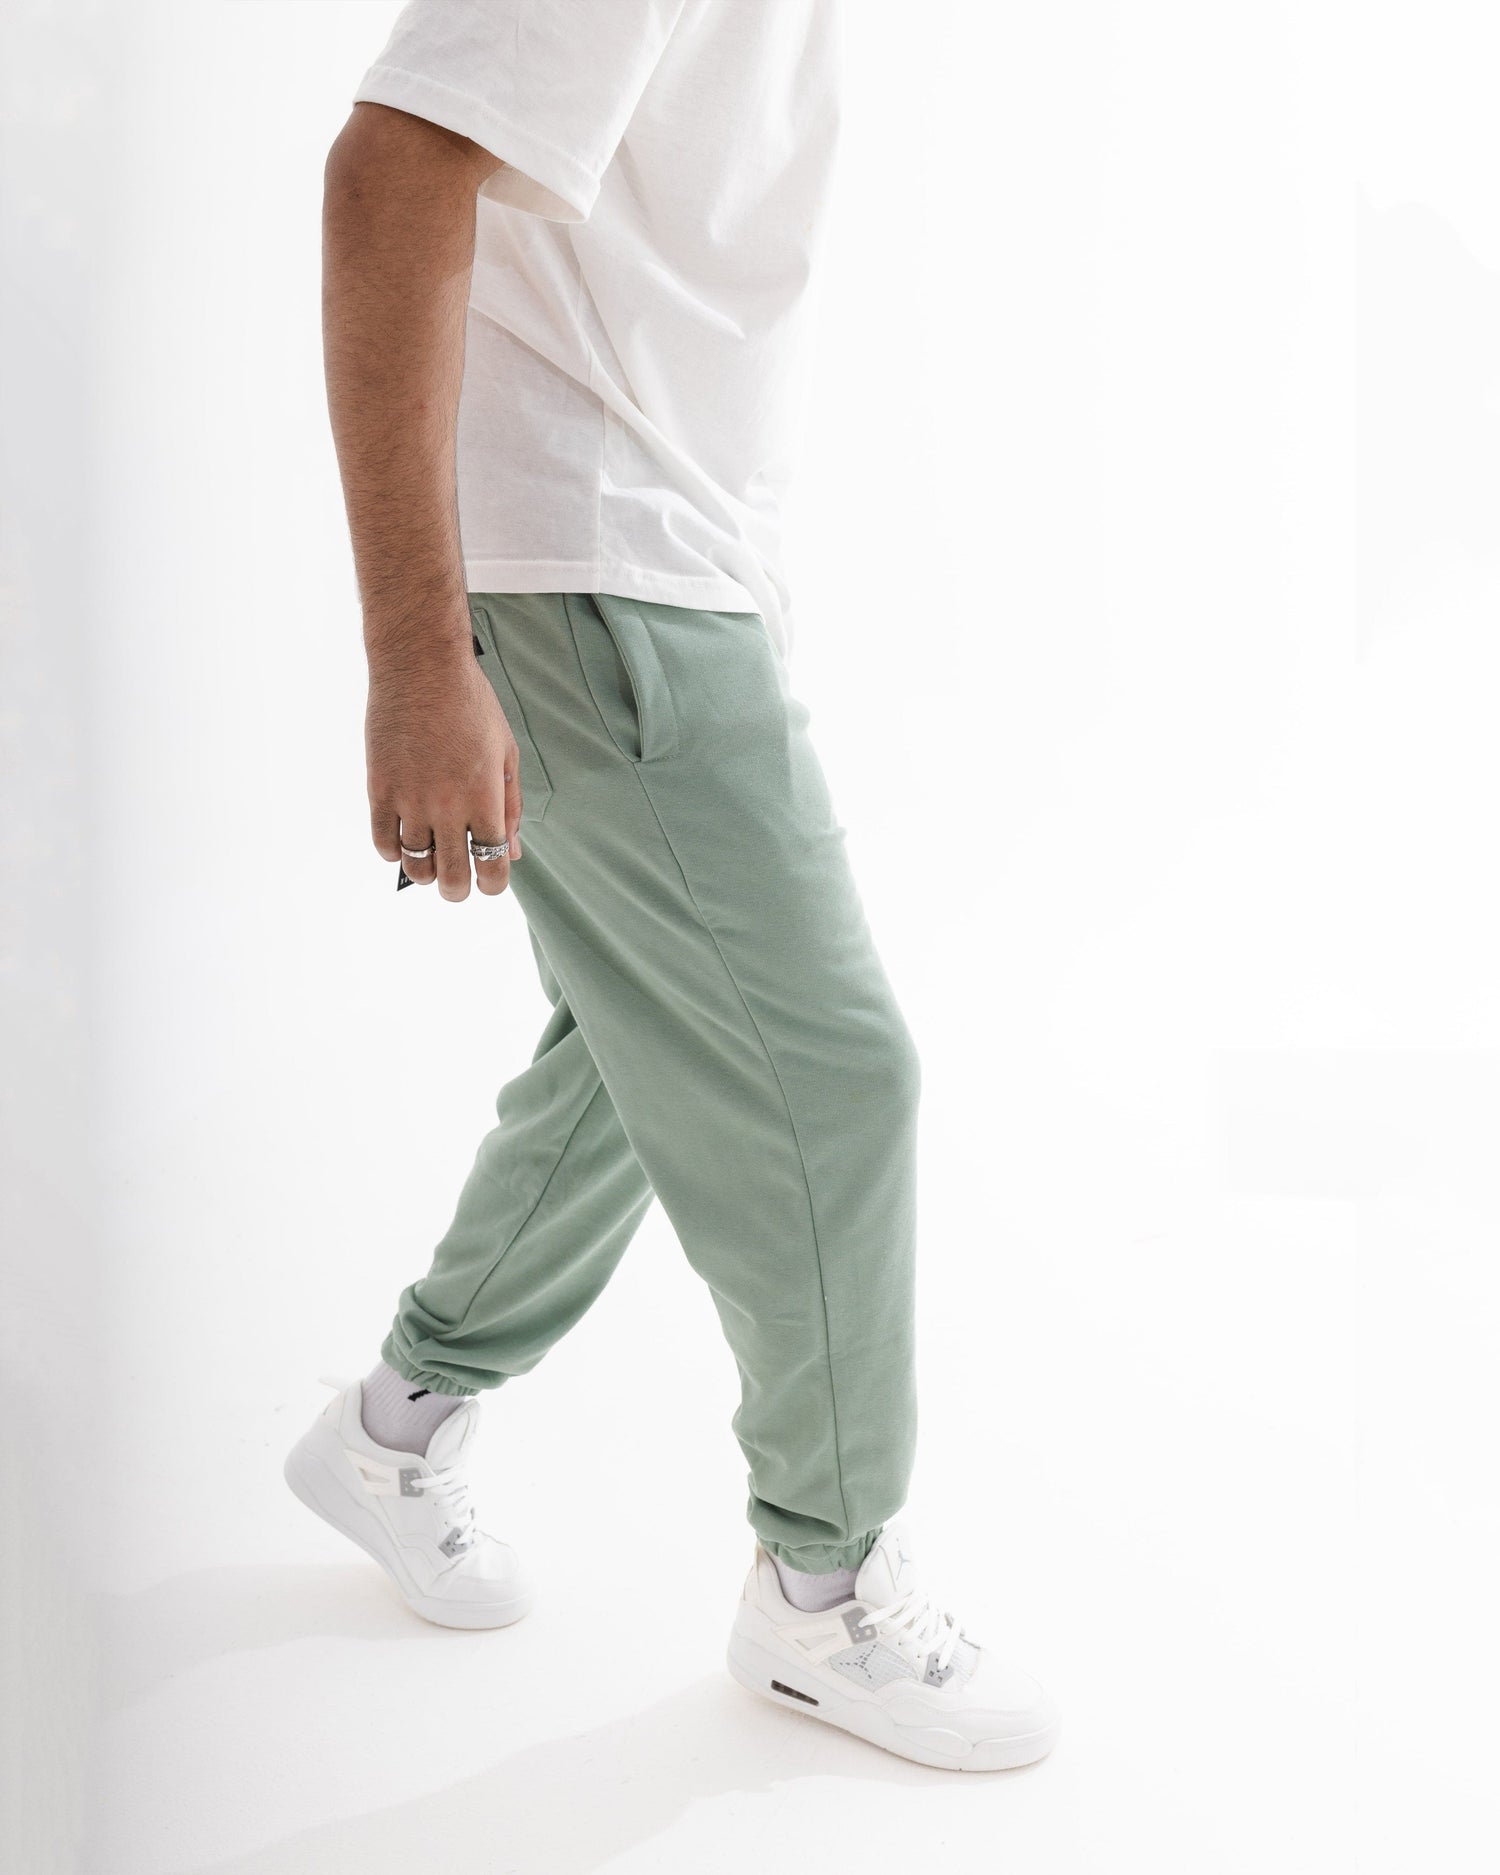 Basic mintgreen sweatpants